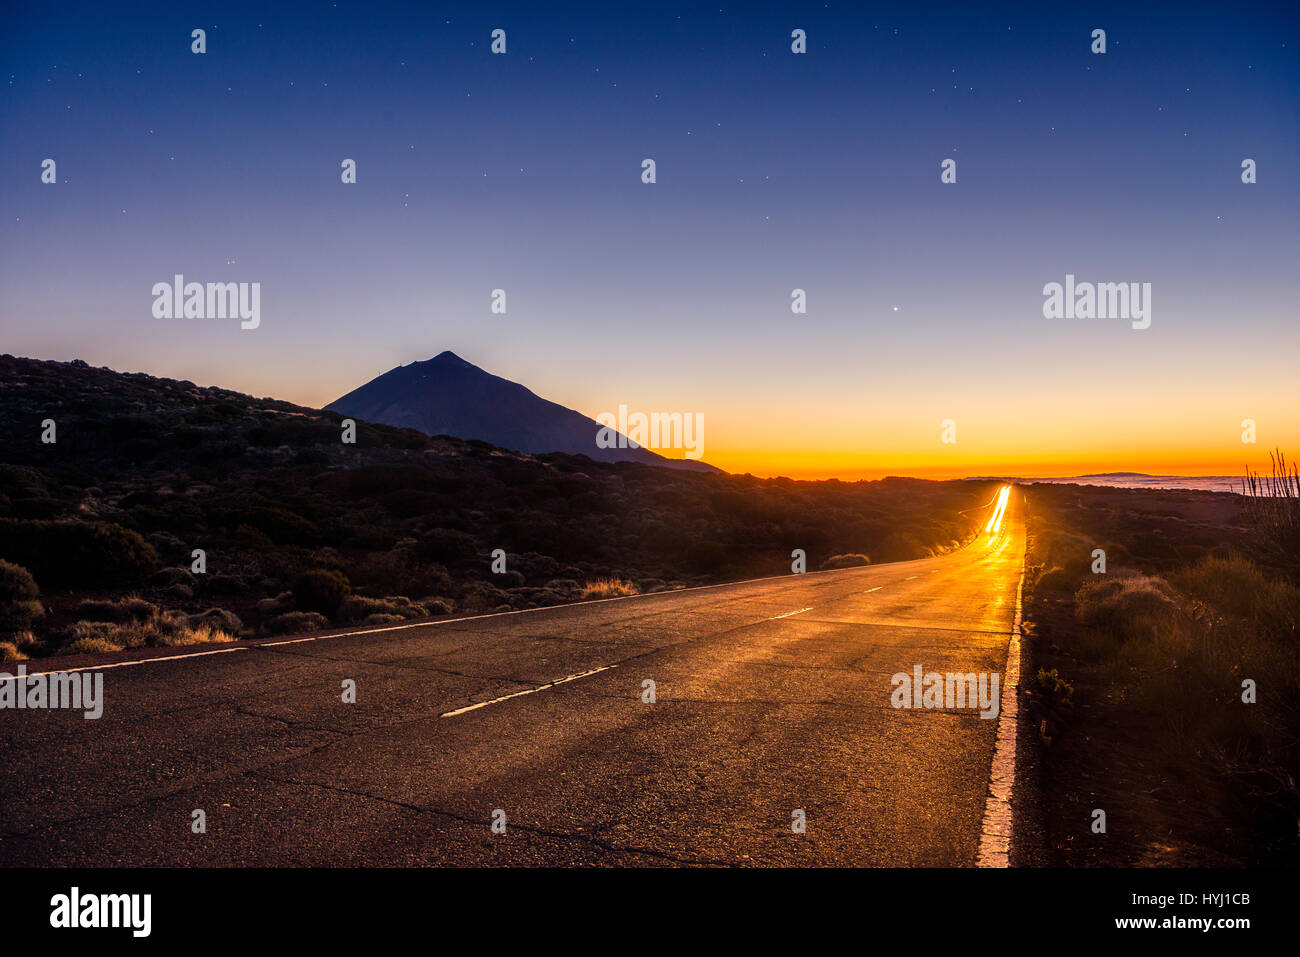 Des sentiers de lumière à partir de la voiture sur route de montagne, la route, coucher de soleil, Vulcano rétroéclairé Teide, silhouette, paysage volcanique, ciel étoilé Banque D'Images